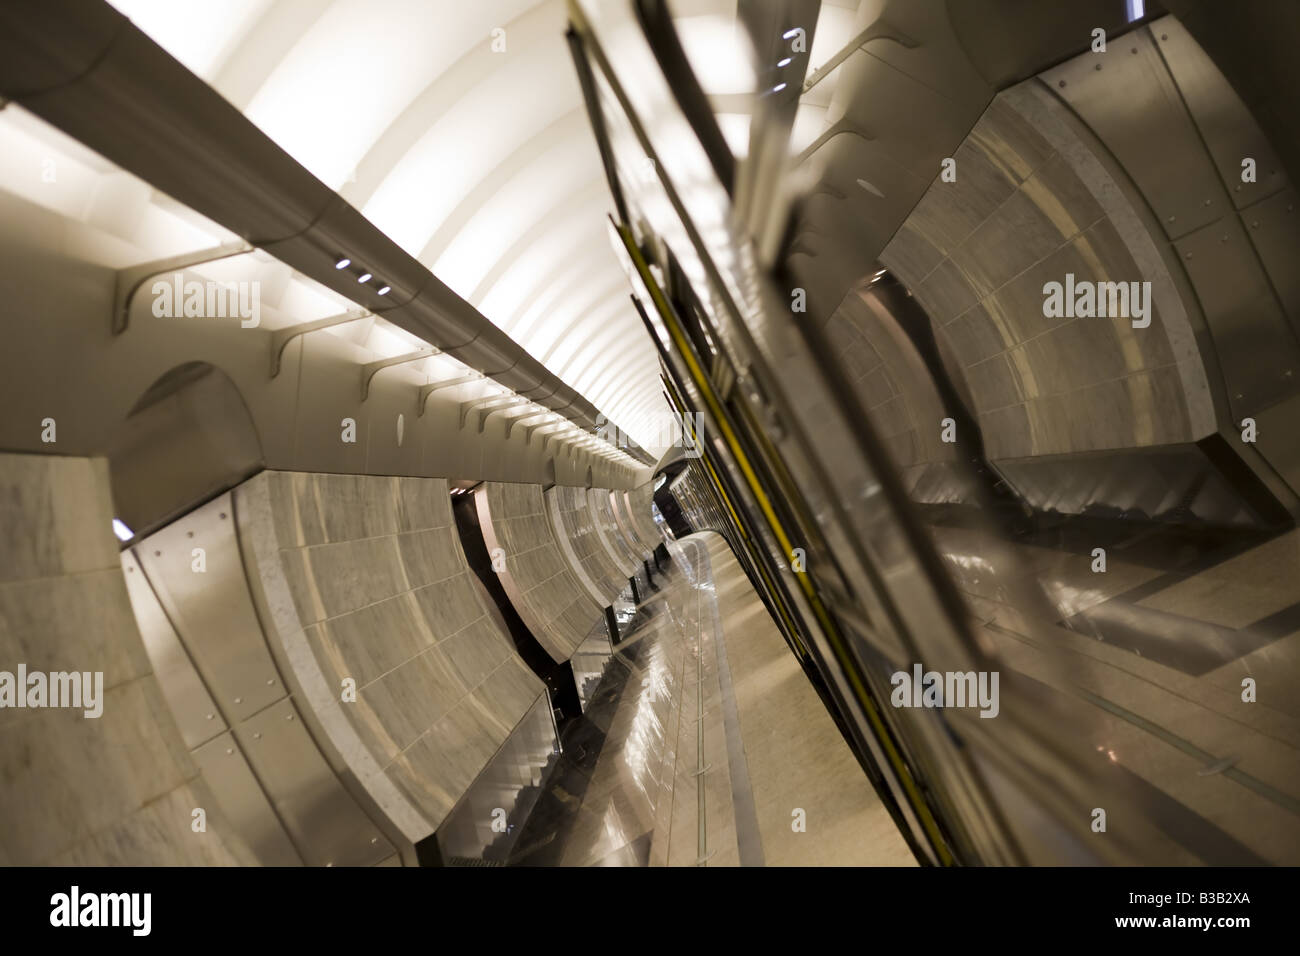 Una vista prospettica di una delle stazioni della metropolitana di Mosca, Russia. La riflessione del treno forme grandi linee con le pareti. Foto Stock